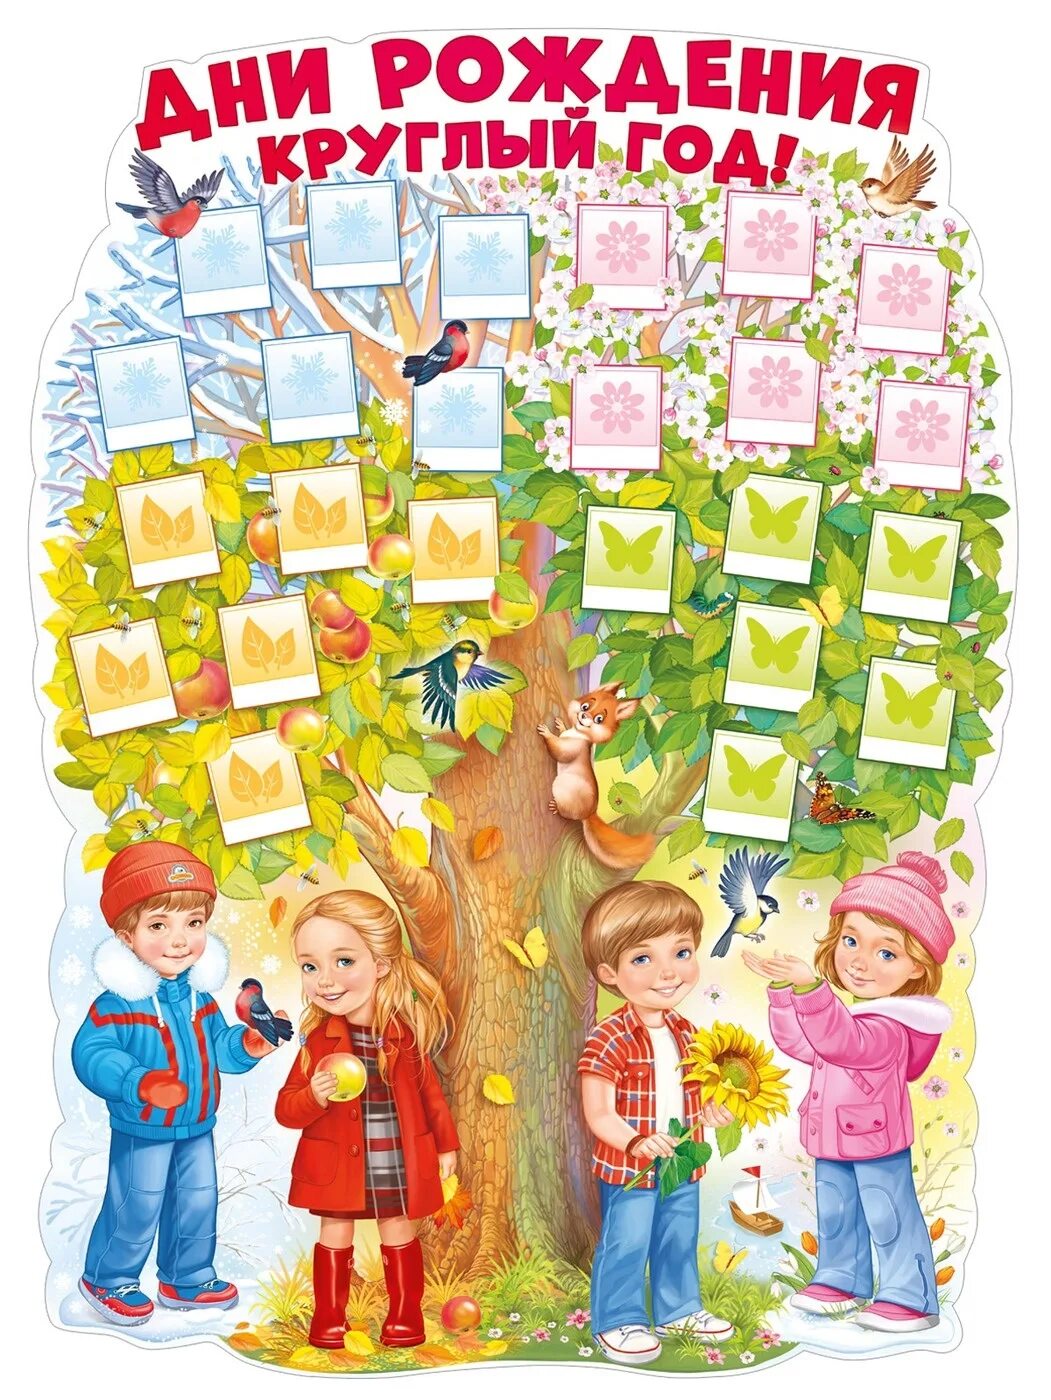 Круглый год апрель. Плакат дни рождения круглый год. Плакат дней рождений в саду. Дерево именинников в детском саду. День именинника плакат для детского сада.